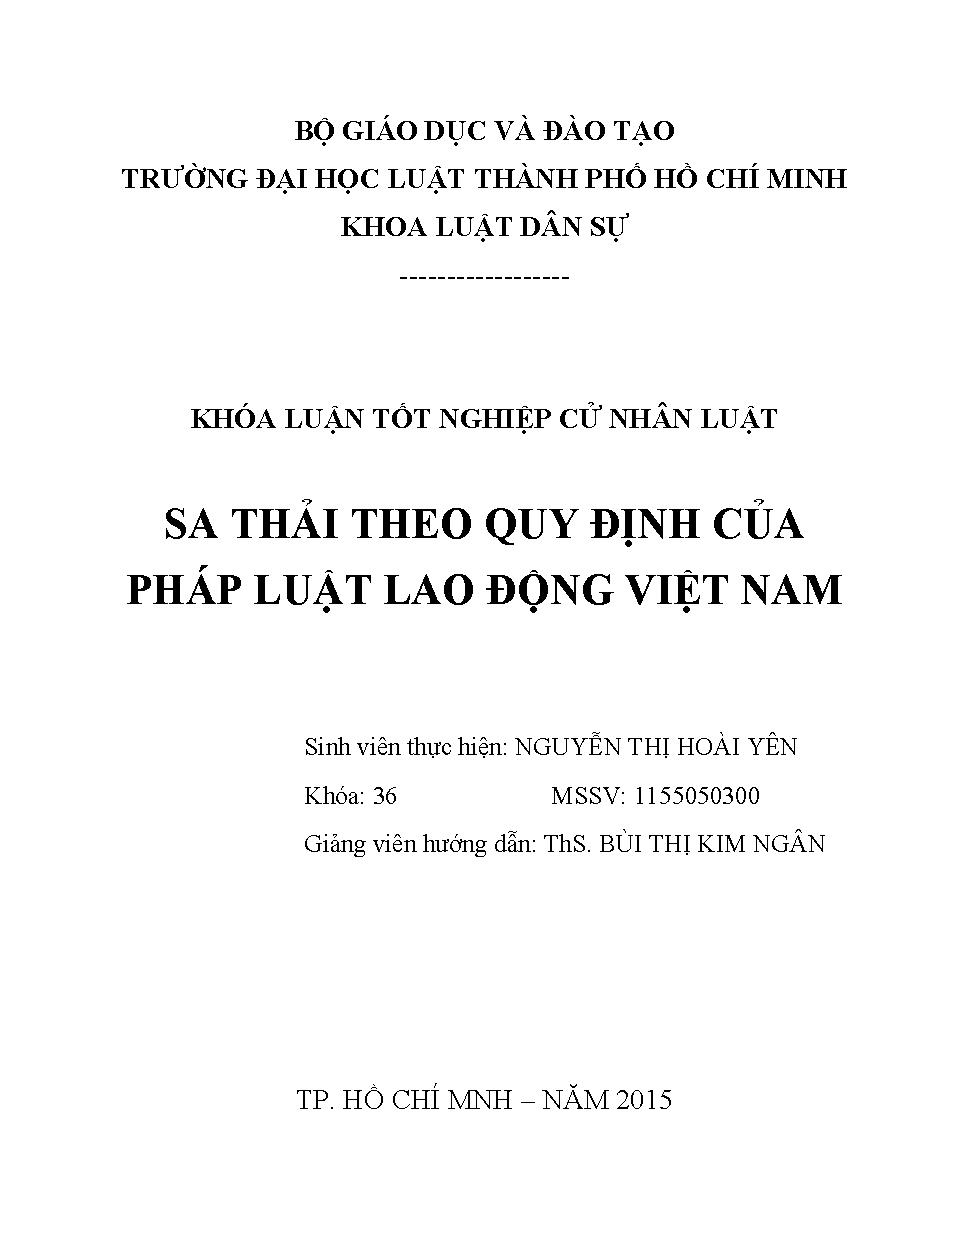 Sa thải theo quy định của pháp luật lao động Việt Nam